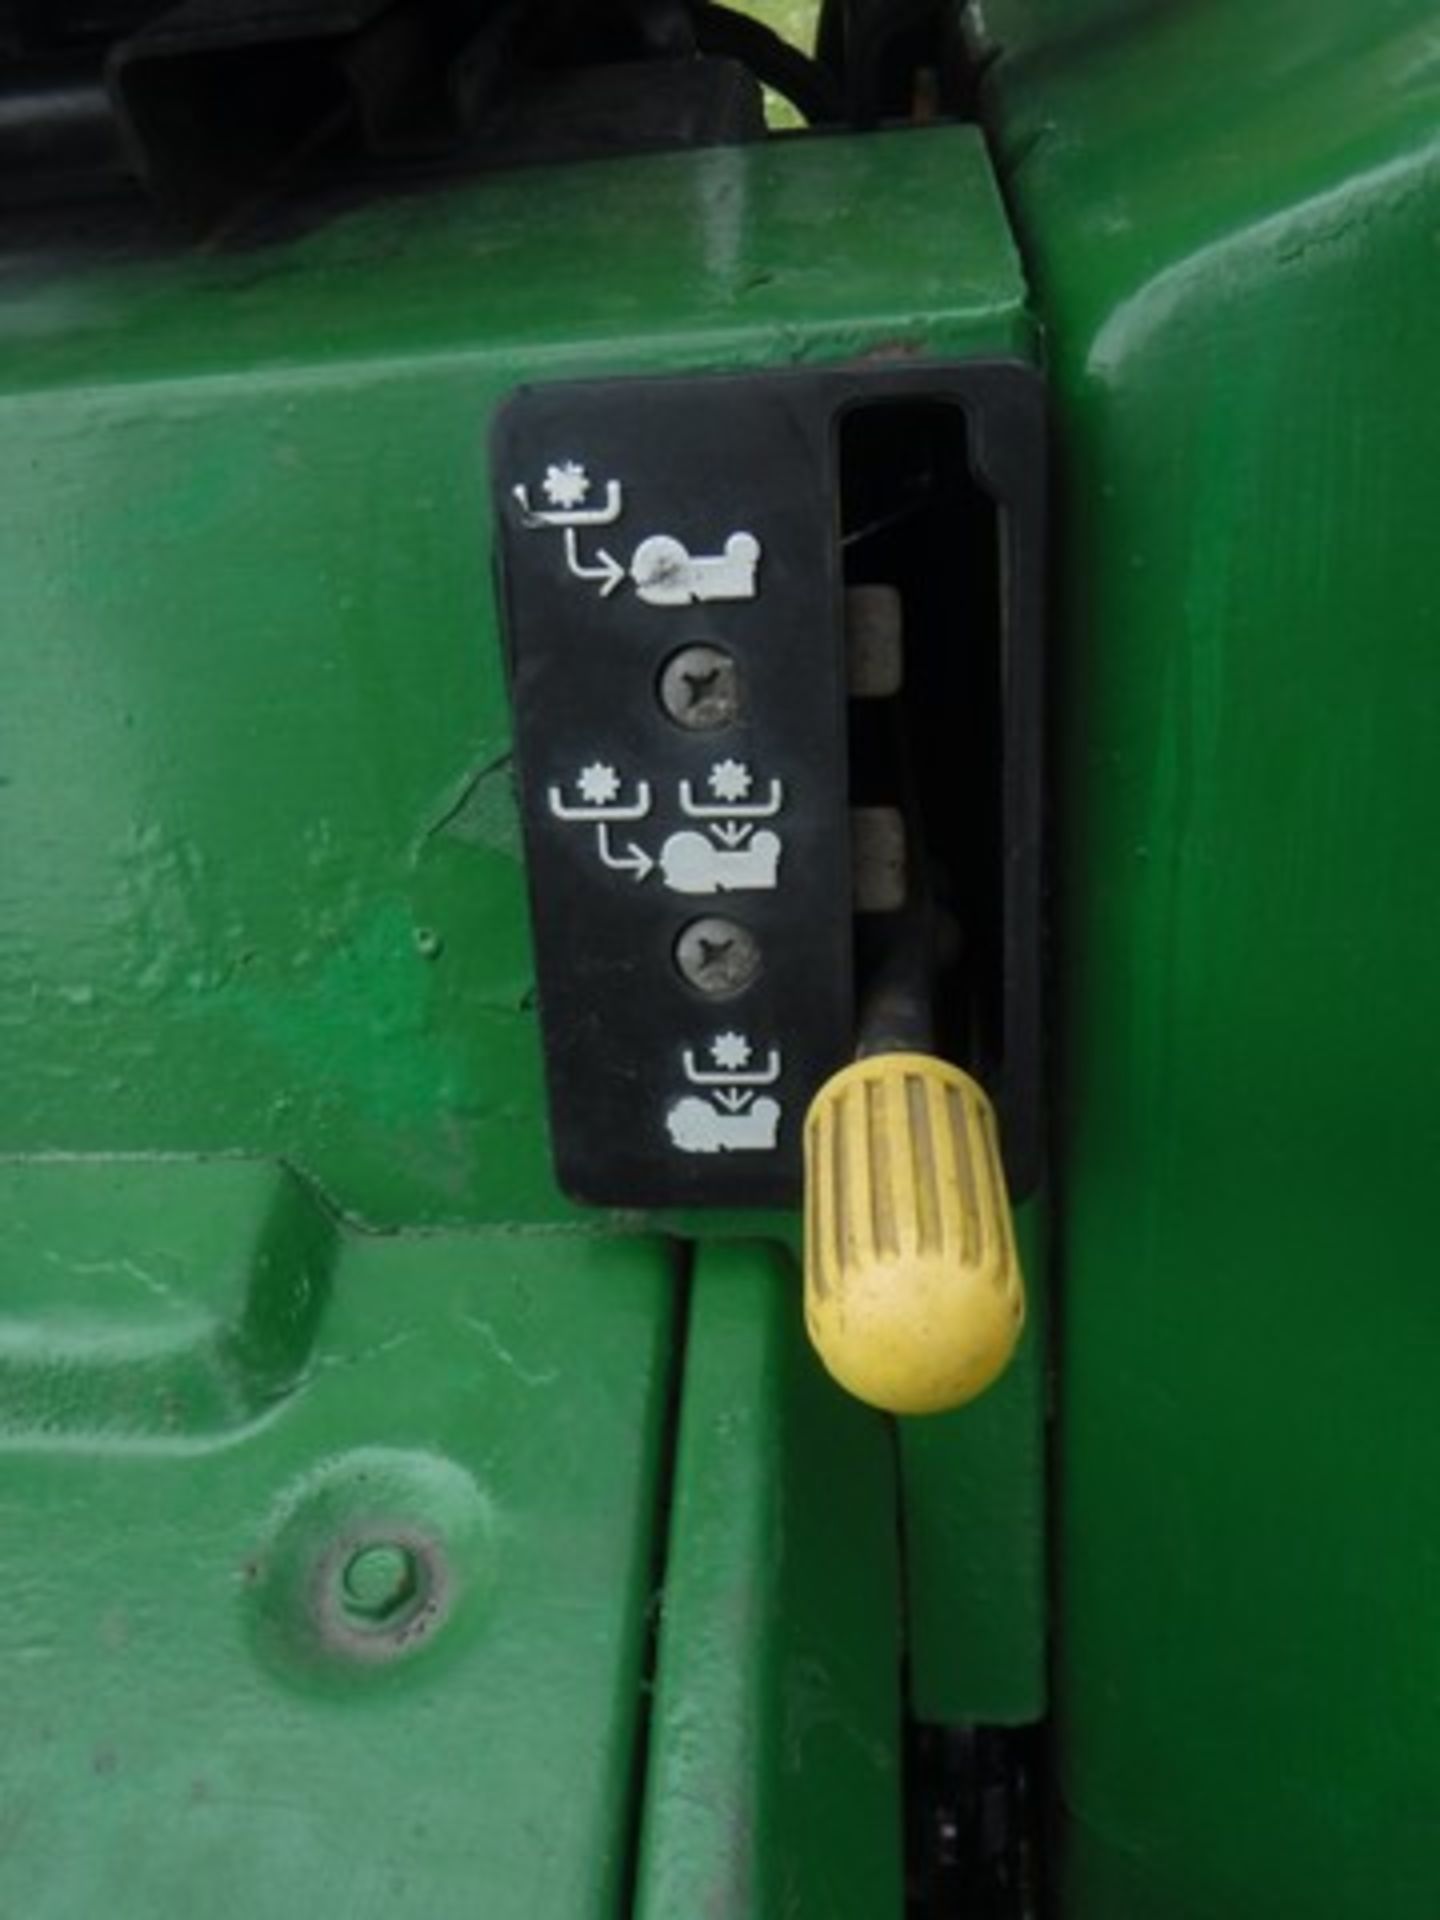 JOHN DEERE 4 x 4 Tractor 755. Reg - H97FBJ. 1003hrs (not verified) - Bild 4 aus 15